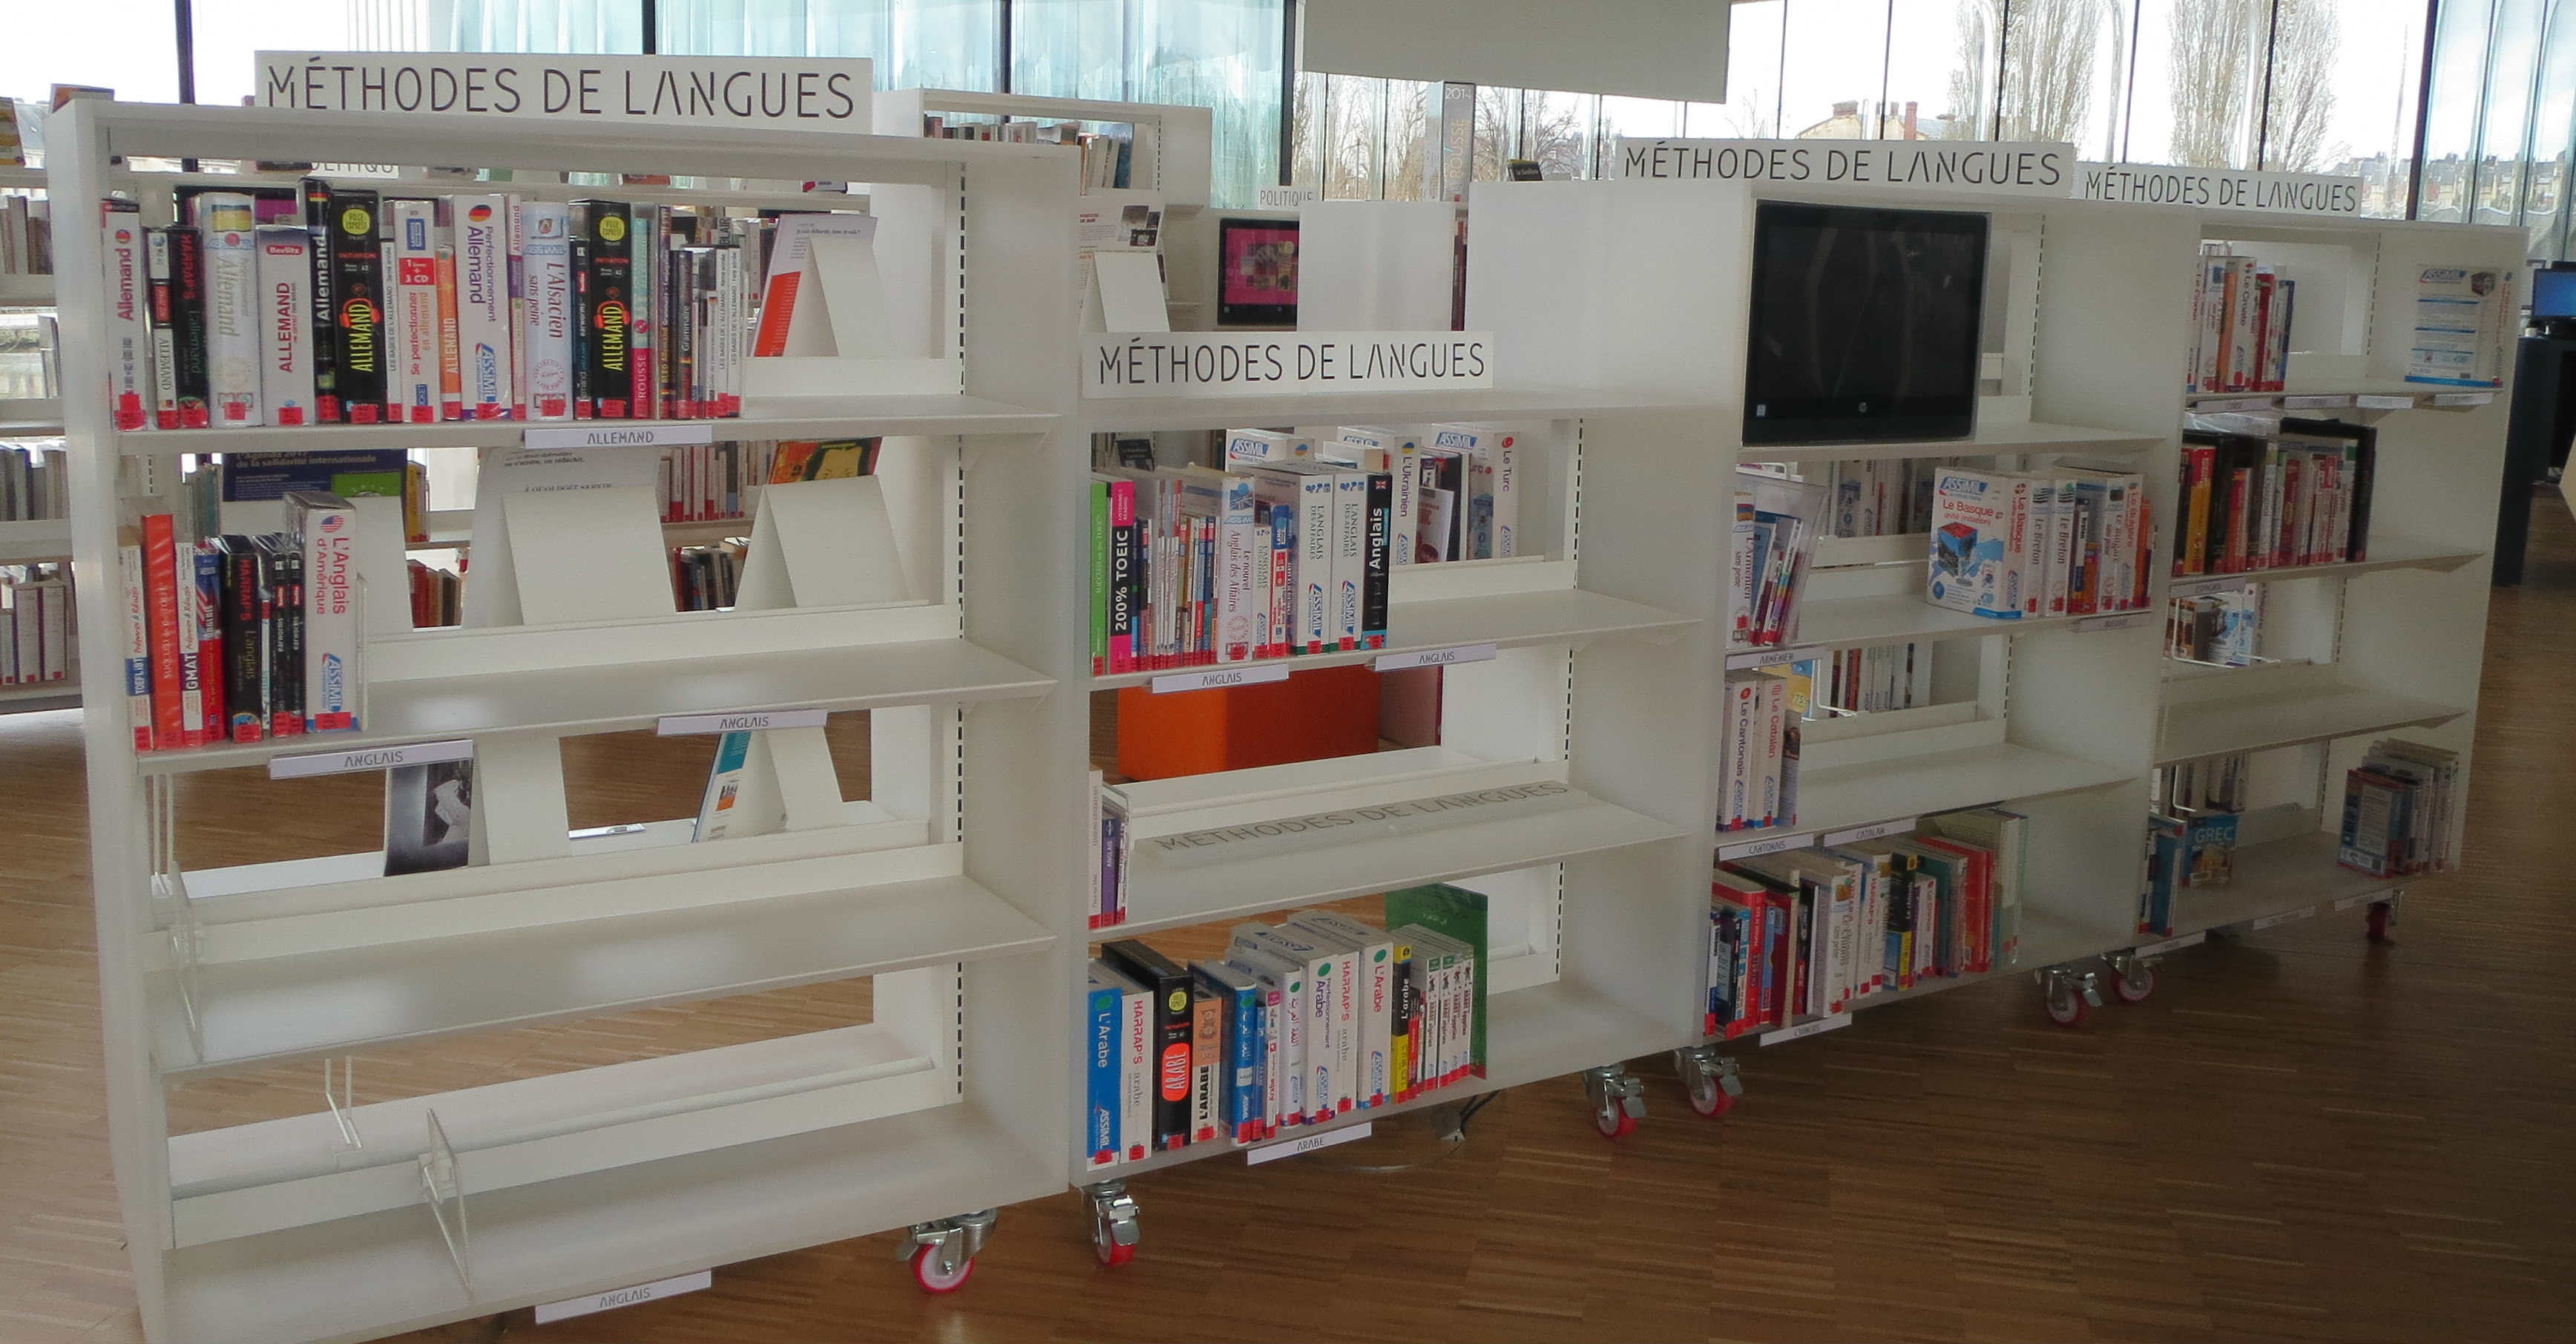 Bibliothèque Alexis de Tocqueville - Caen (Pôle Littérature 1er niveau)